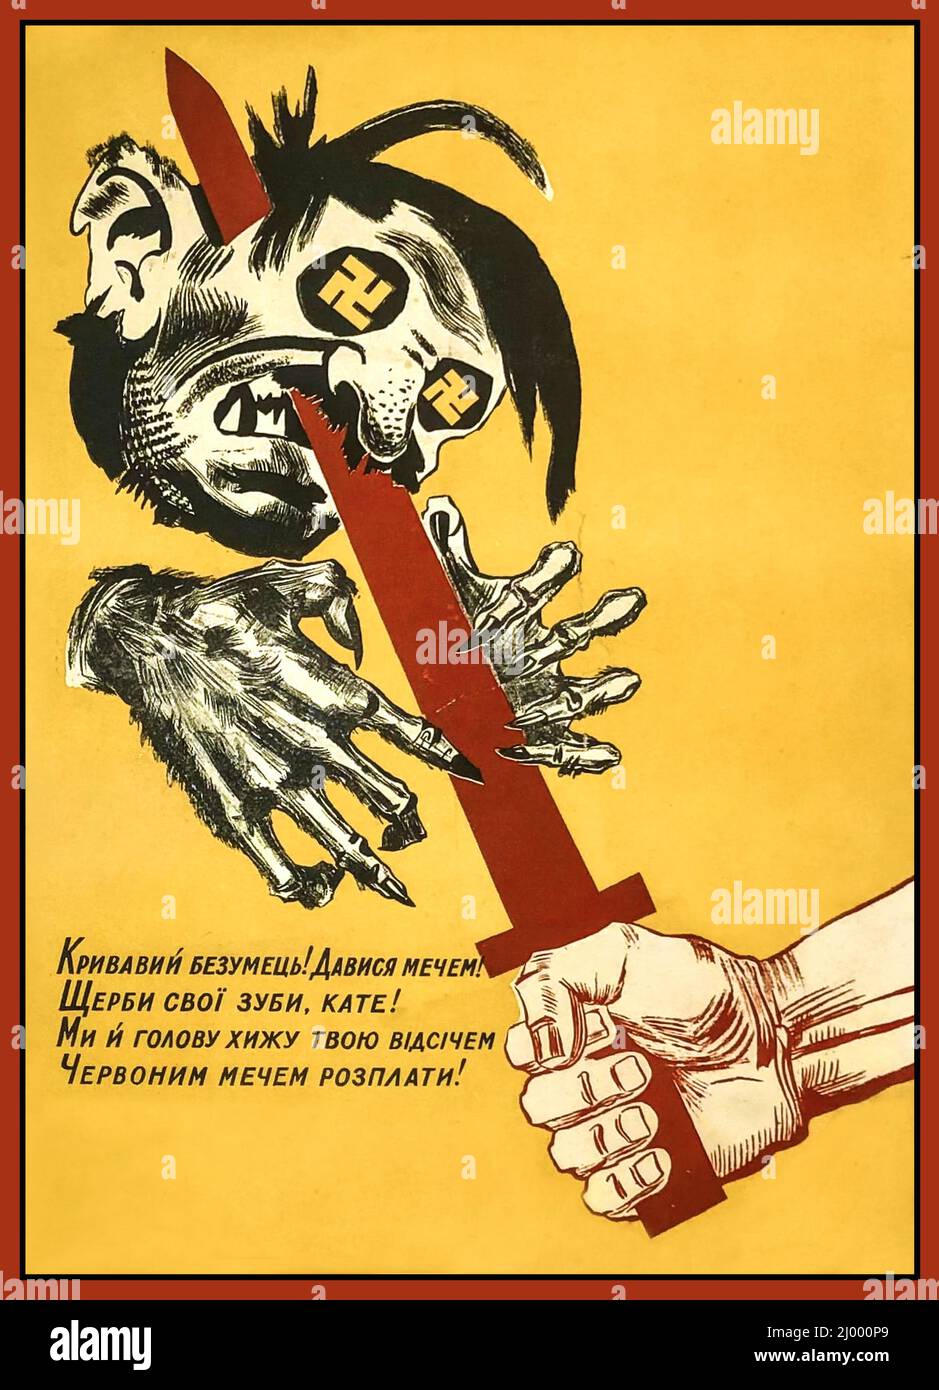 WW2 Ukraine Poster de propagande 1941 fou sanglant! Étouffez avec l'épée ! Graissez vos dents, bourreau ! Nous allons couper votre tête prédatrice avec une épée rouge de rétribution! Ukraine SSR, Kharkiv, 1941 Banque D'Images